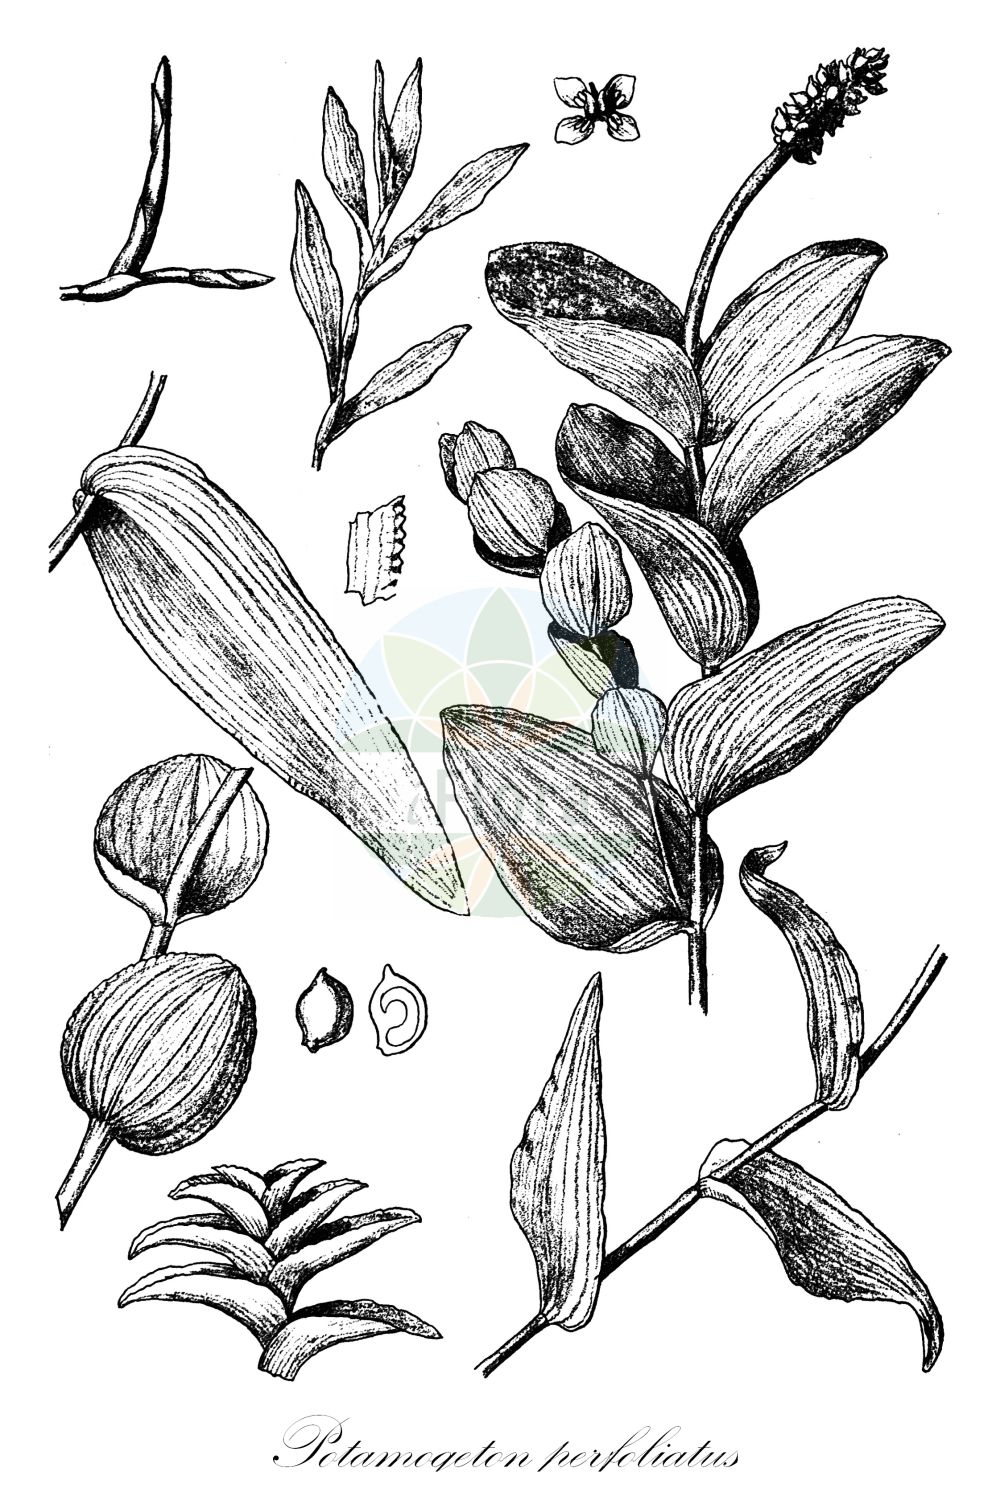 Historische Abbildung von Potamogeton perfoliatus (Durchwachsenes Laichkraut - Perfoliate Pondweed). Das Bild zeigt Blatt, Bluete, Frucht und Same. ---- Historical Drawing of Potamogeton perfoliatus (Durchwachsenes Laichkraut - Perfoliate Pondweed). The image is showing leaf, flower, fruit and seed.(Potamogeton perfoliatus,Durchwachsenes Laichkraut,Perfoliate Pondweed,Potamogeton perfoliatus,Durchwachsenes Laichkraut,Perfoliate Pondweed,Claspingleaf Pondweed,Potamogeton,Laichkraut,Pondweed,Potamogetonaceae,Laichkrautgewächse,Pondweed family,Blatt,Bluete,Frucht,Same,leaf,flower,fruit,seed,Engler (1900-1937))